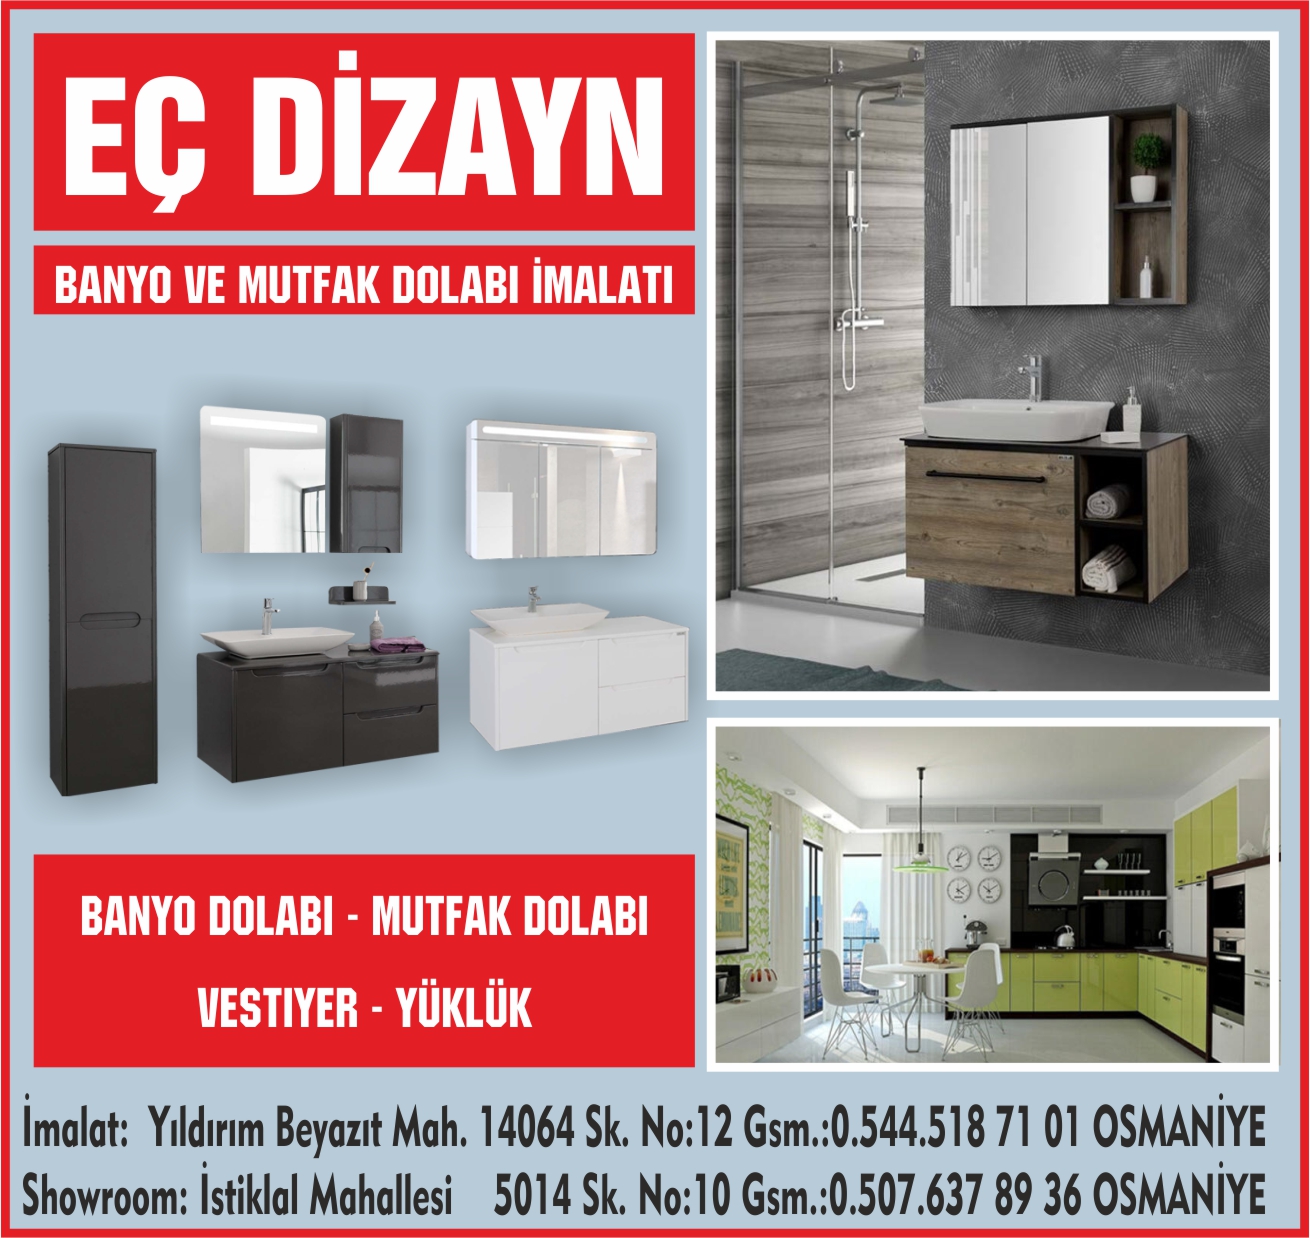 ec-dizayn-osmaniye